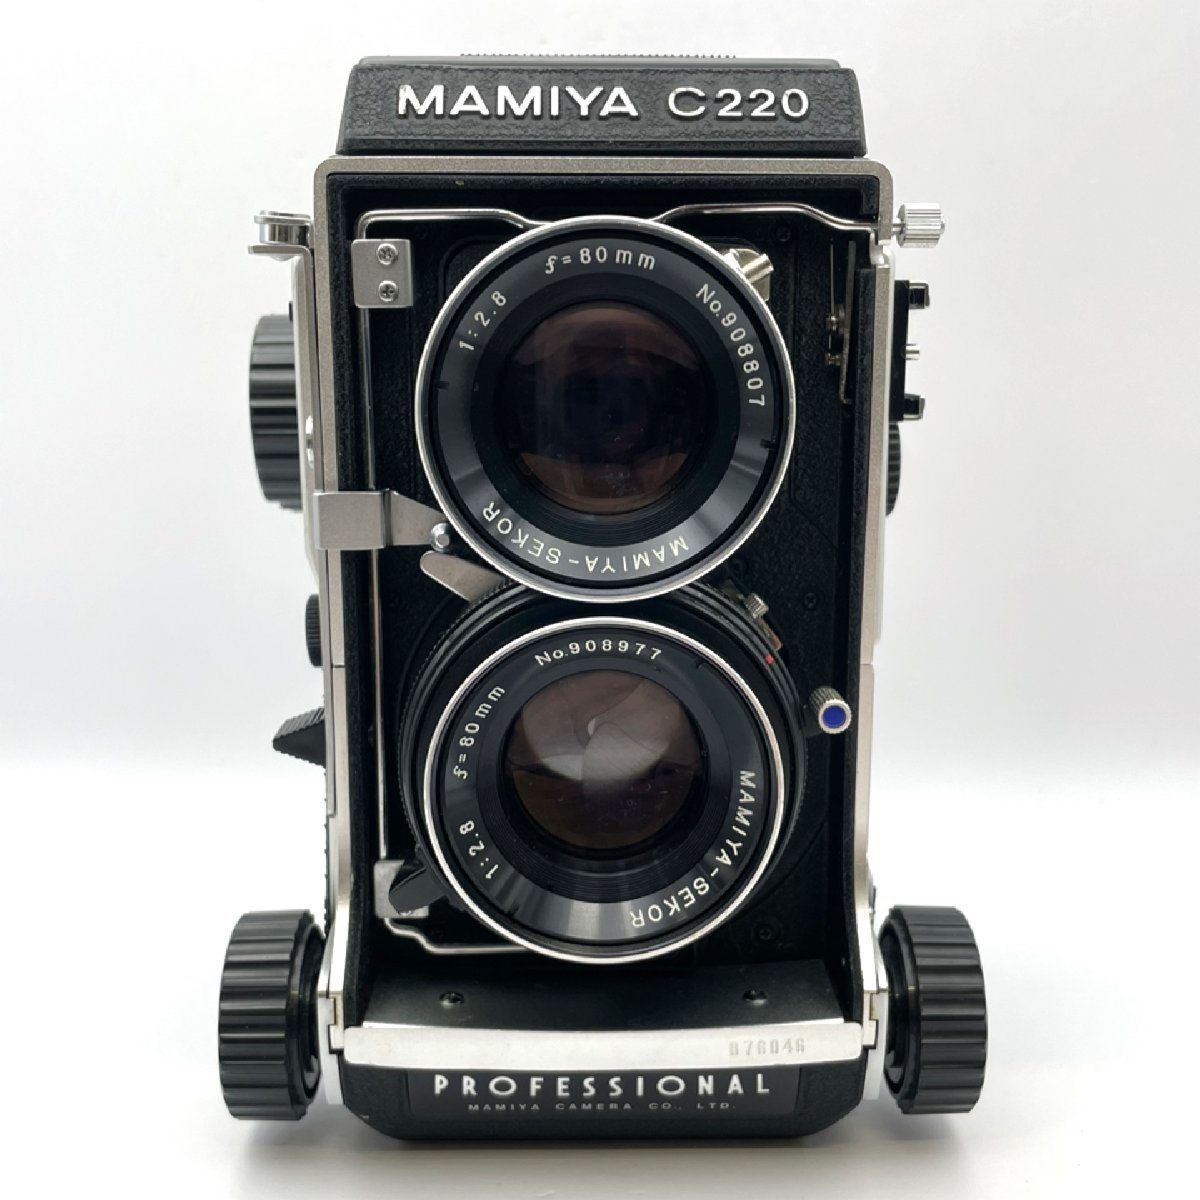 になります MAMIYA マミヤ 二眼レフカメラ dy3wx-m79580693562 C220 PROFESSIONAL マミヤ